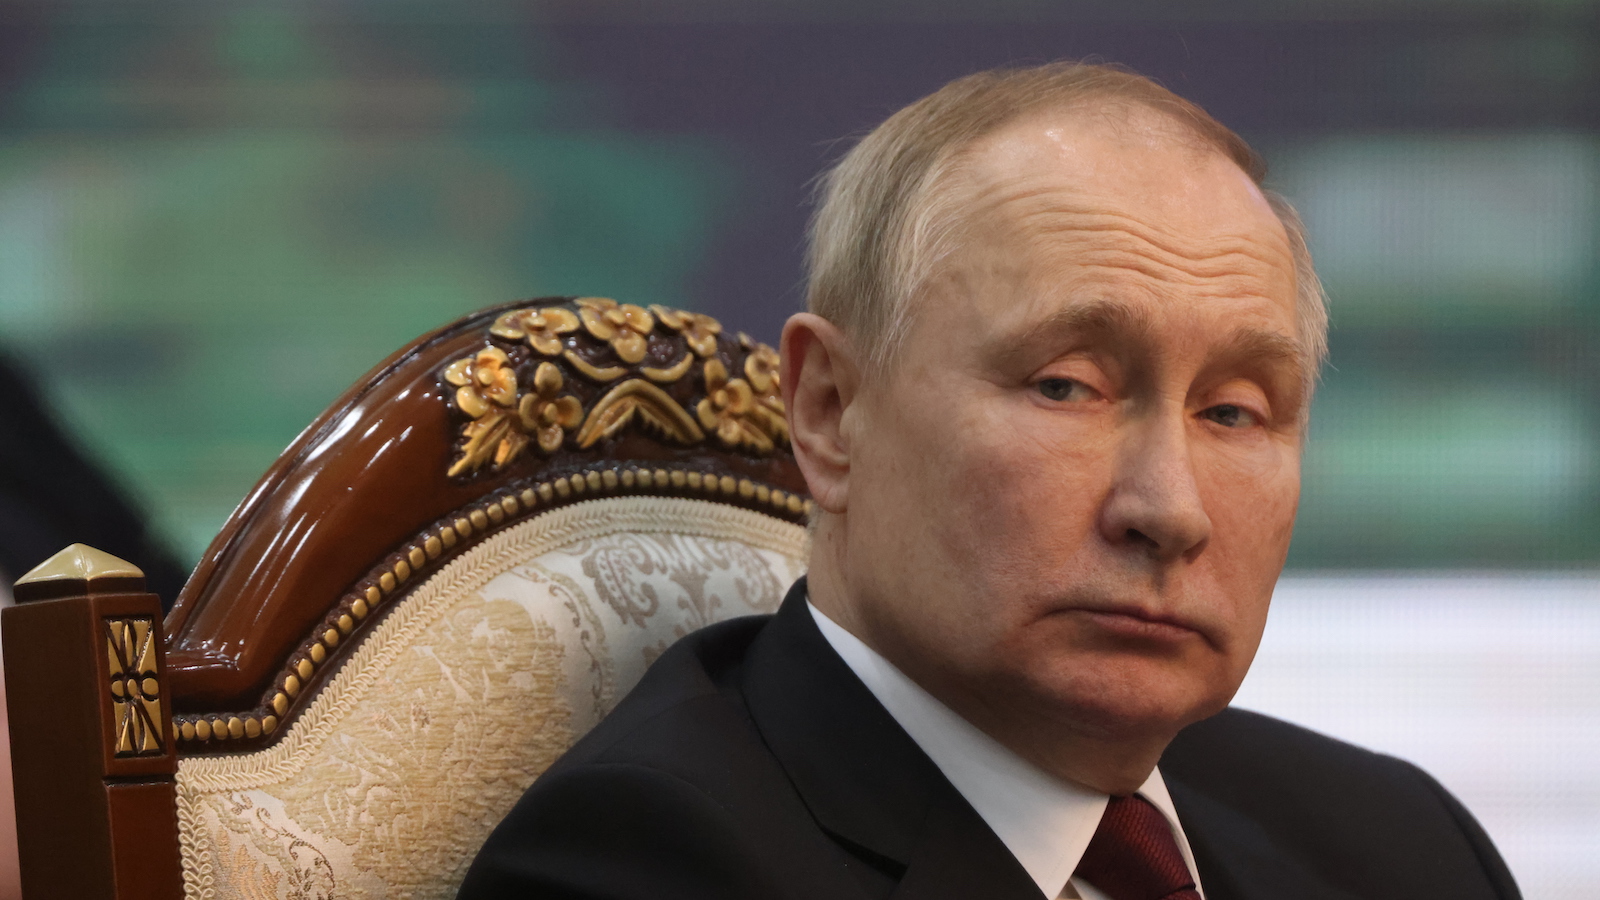 政治学者グリゴリー・ゴロソフ「プーチンの独裁が続くより軍事政権が生まれる可能性が高い」 | 四つのシナリオを分析